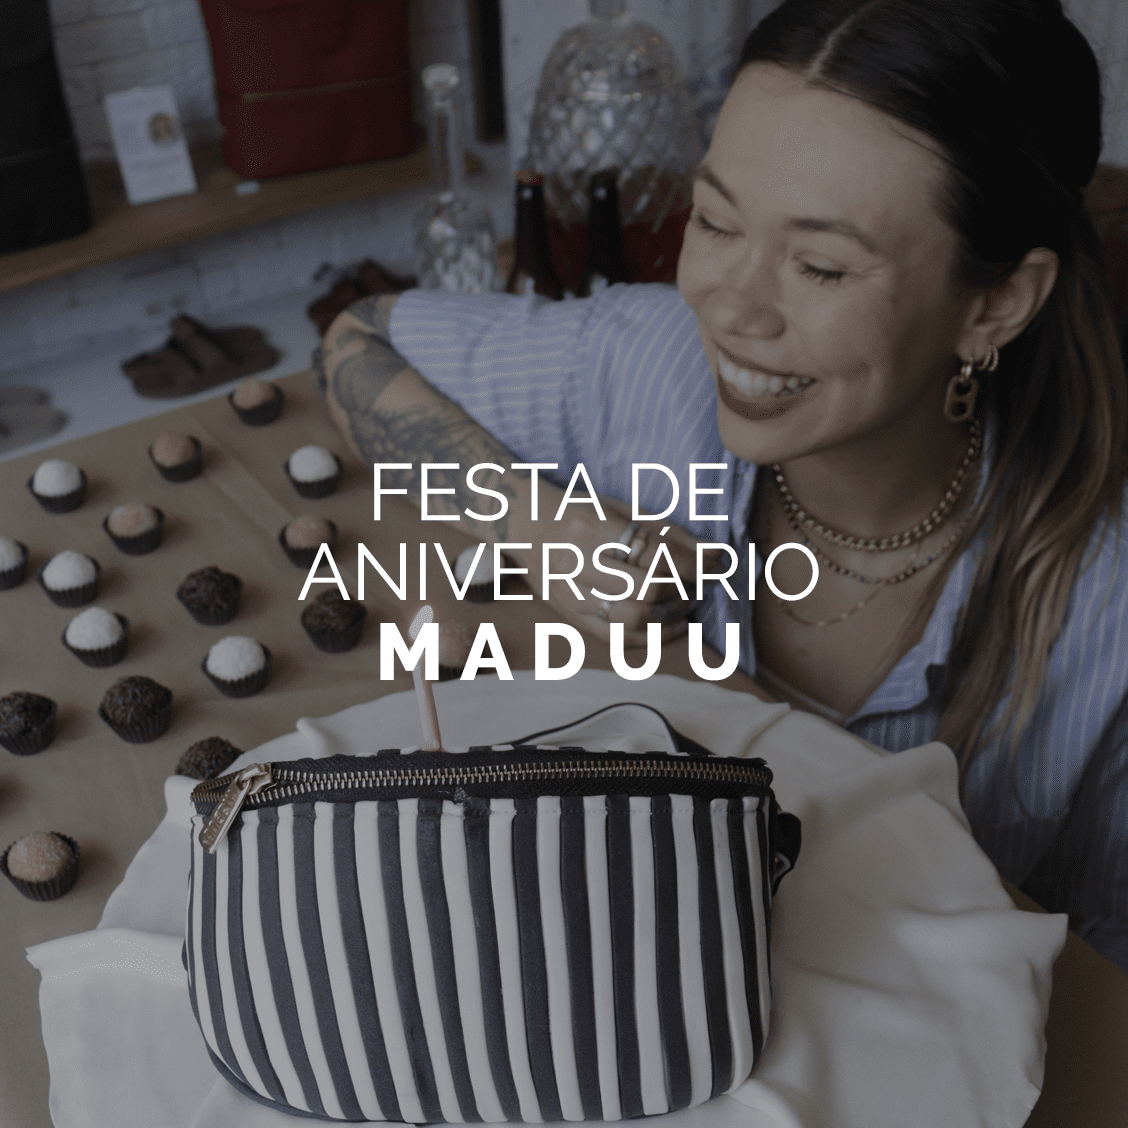 Festa de aniversário vegana da Maduu